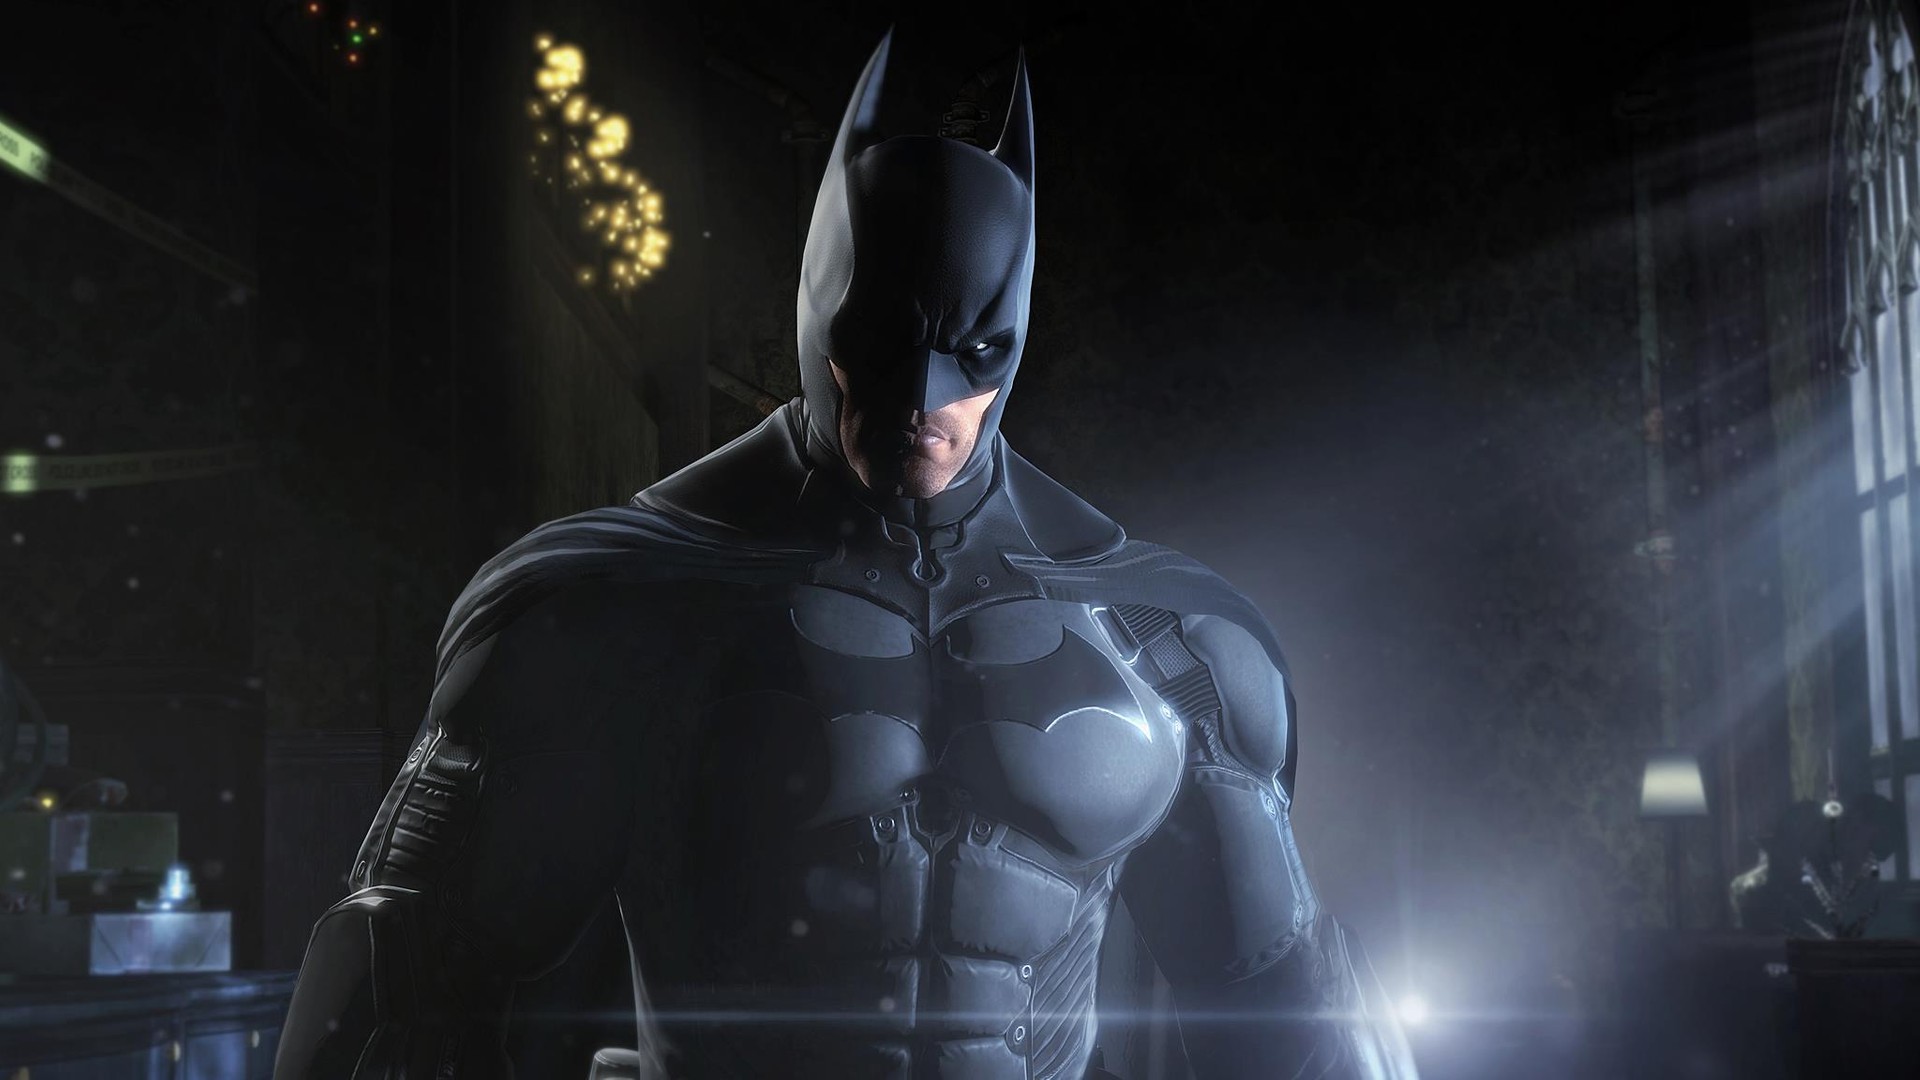 Gotham Knights': confira o trailer do novo jogo do Batman - Olhar Digital